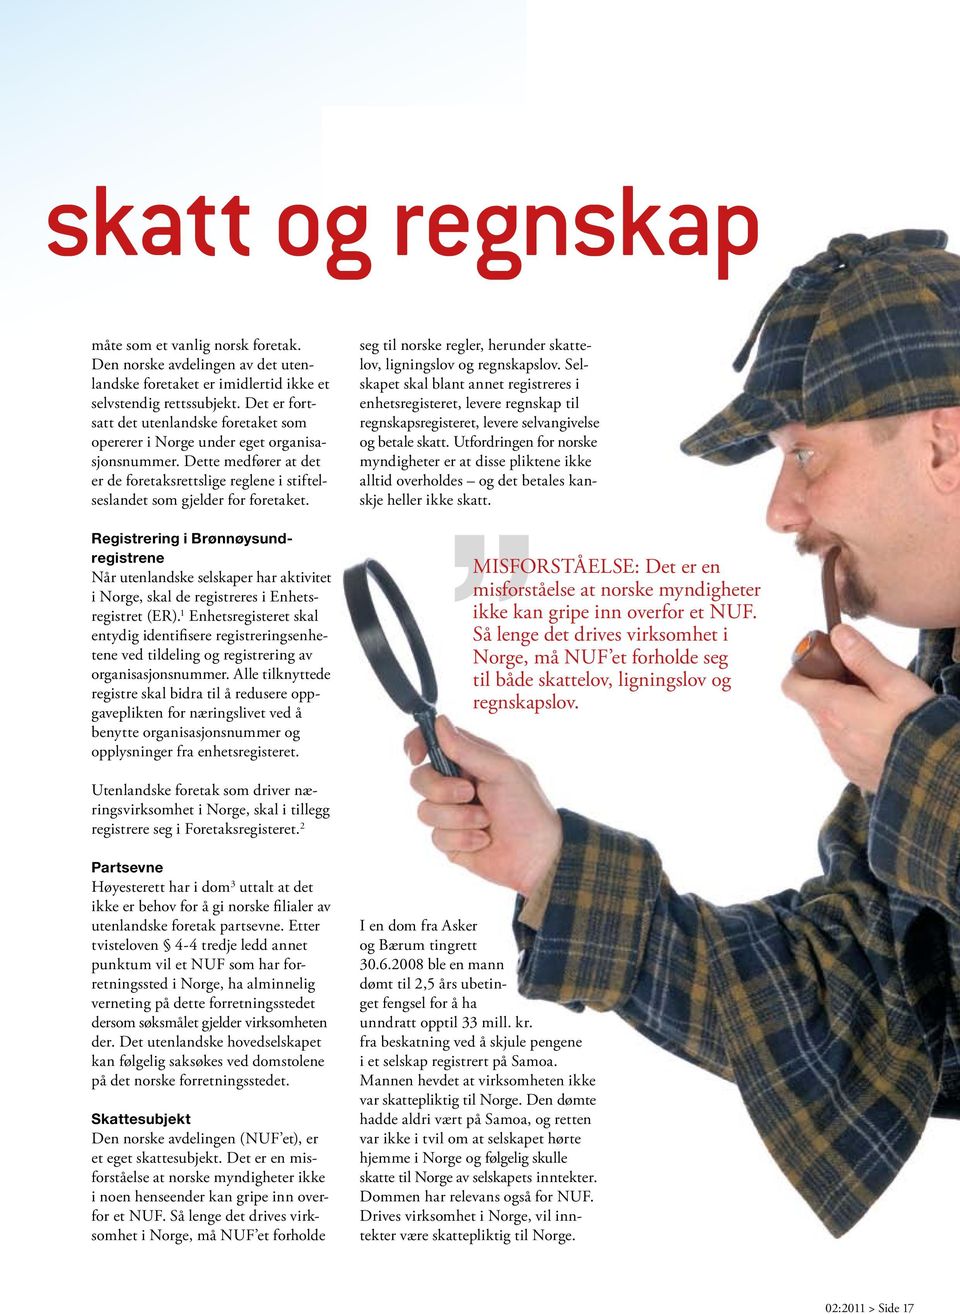 Registrering i Brønnøysundregistrene Når utenlandske selskaper har aktivitet i Norge, skal de registreres i Enhetsregistret (ER).